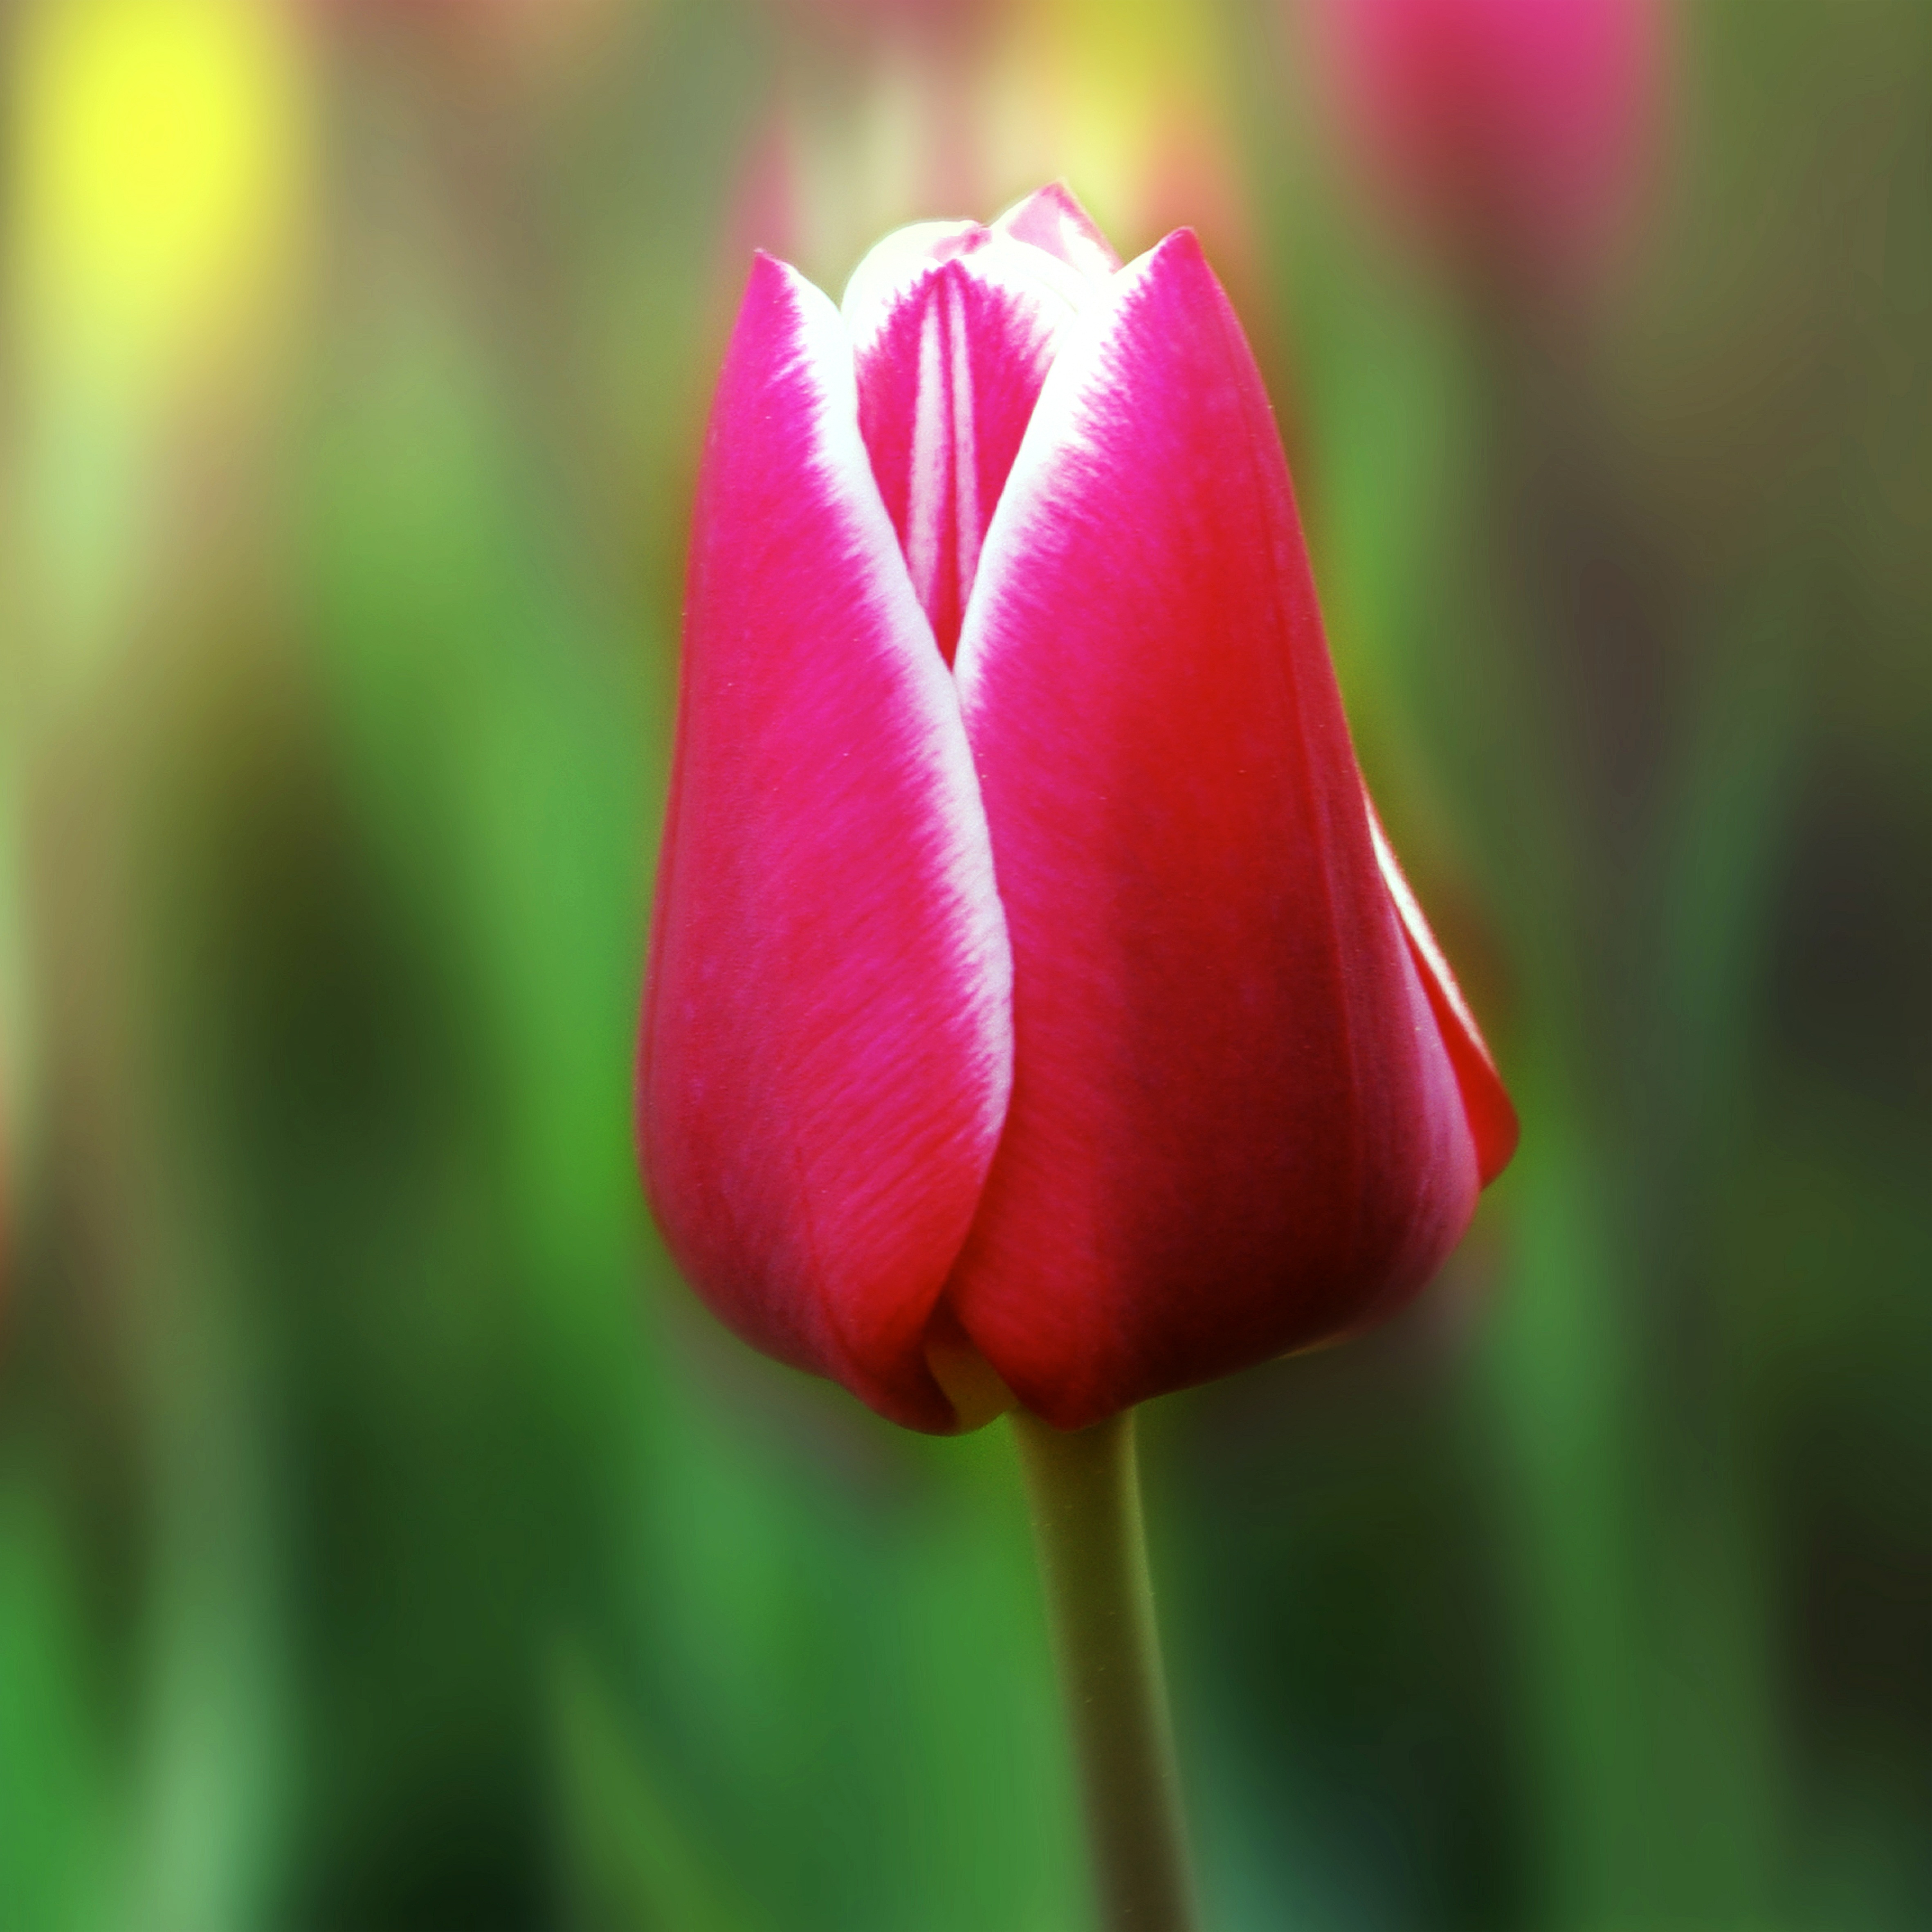 Fresh tulip photo